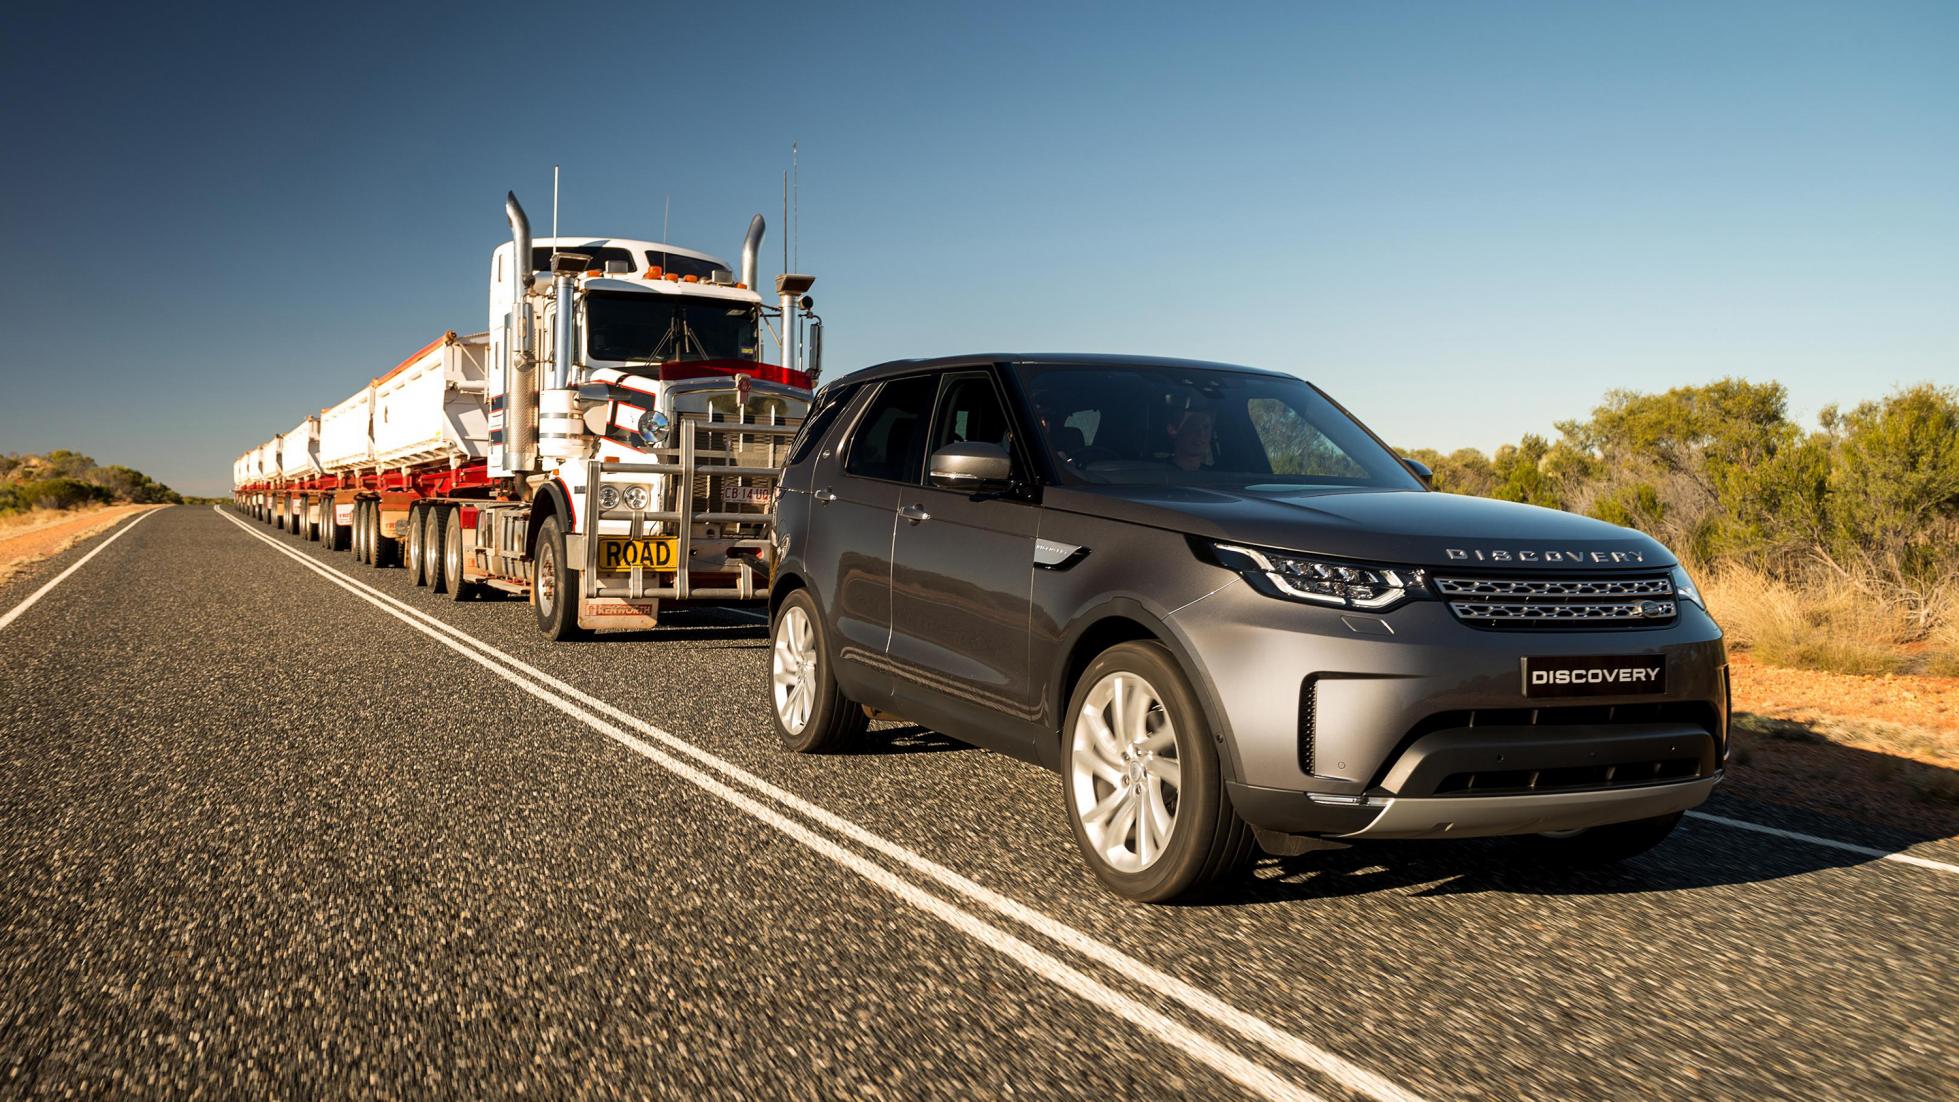 Land Rover Discovery reboca caminhao australia 2017